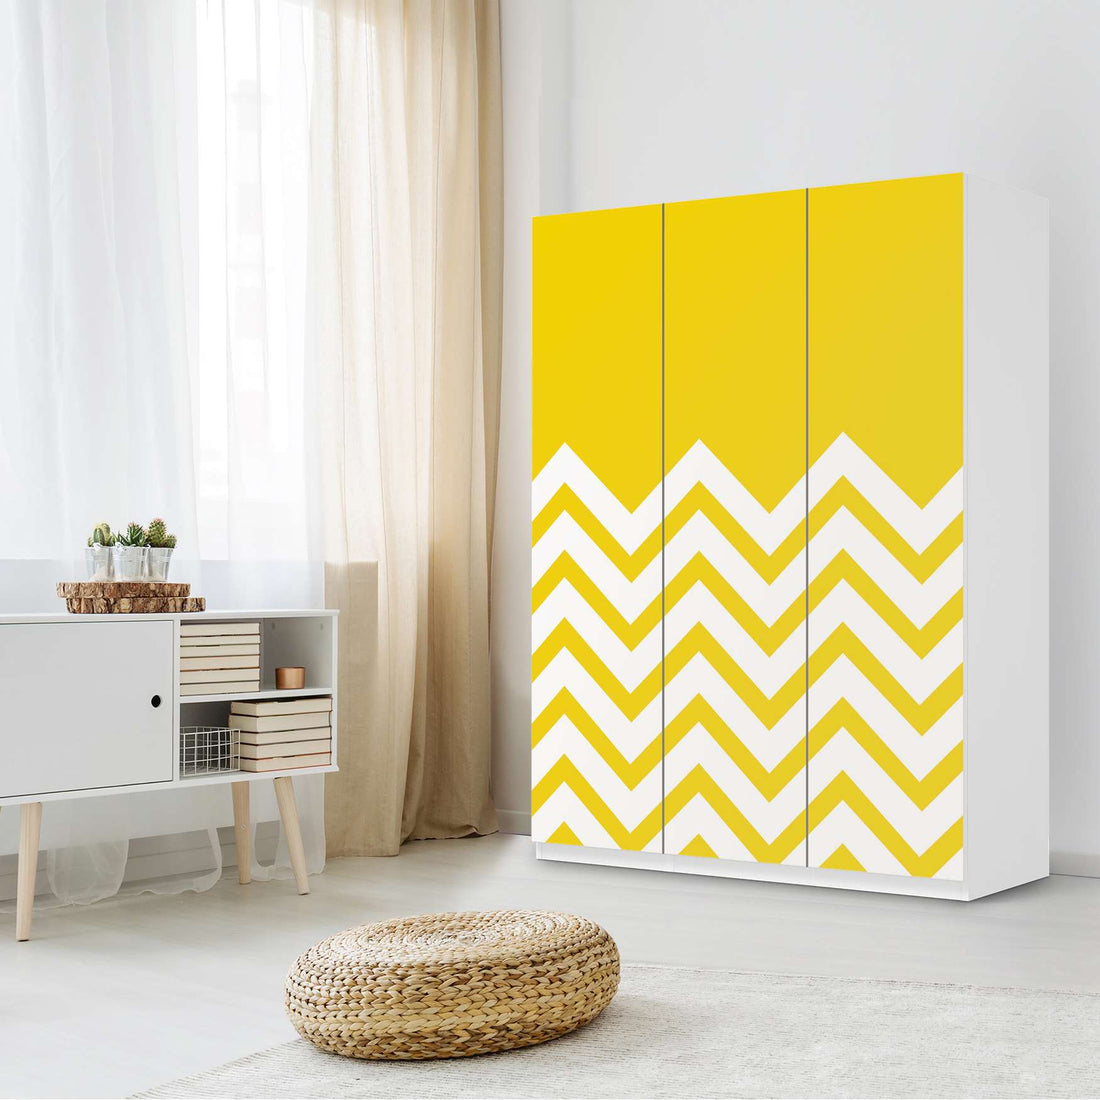 Folie für Möbel Gelbe Zacken - IKEA Pax Schrank 201 cm Höhe - 3 Türen - Schlafzimmer